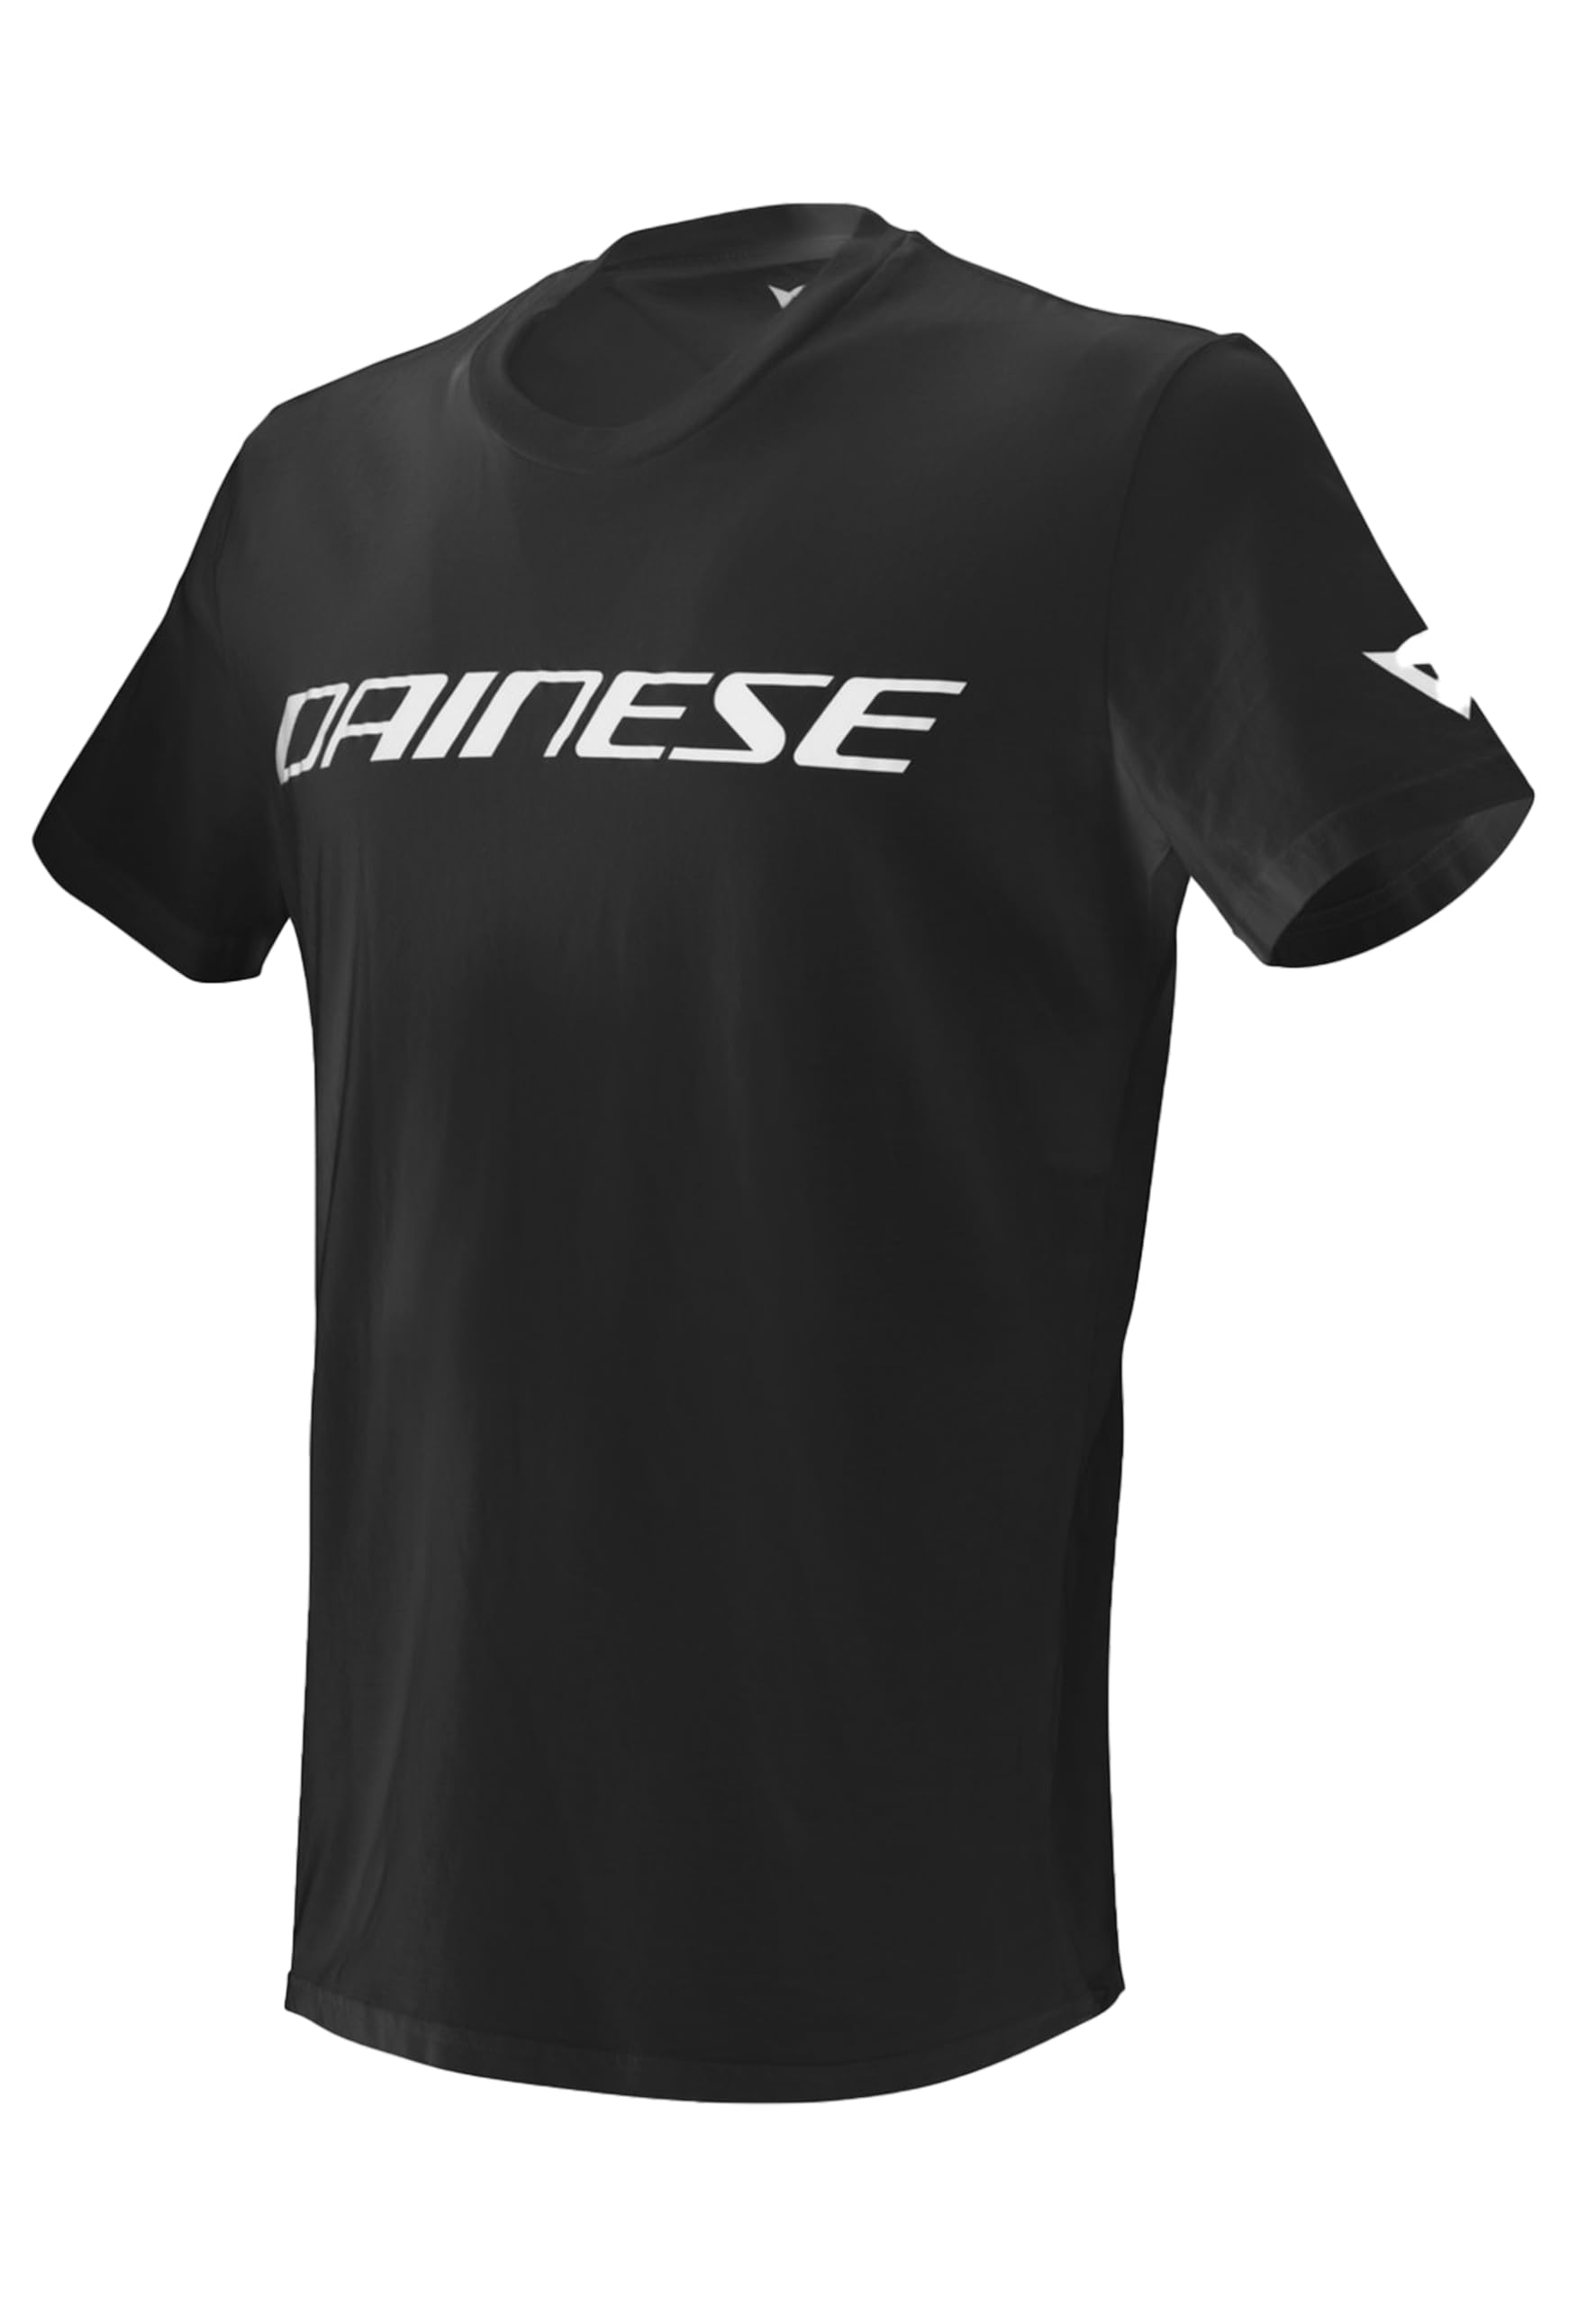 Dainese Unisex Erwachsene Dainese T-shirt T shirt, Schwarz/Weiss, XXL EU von Dainese